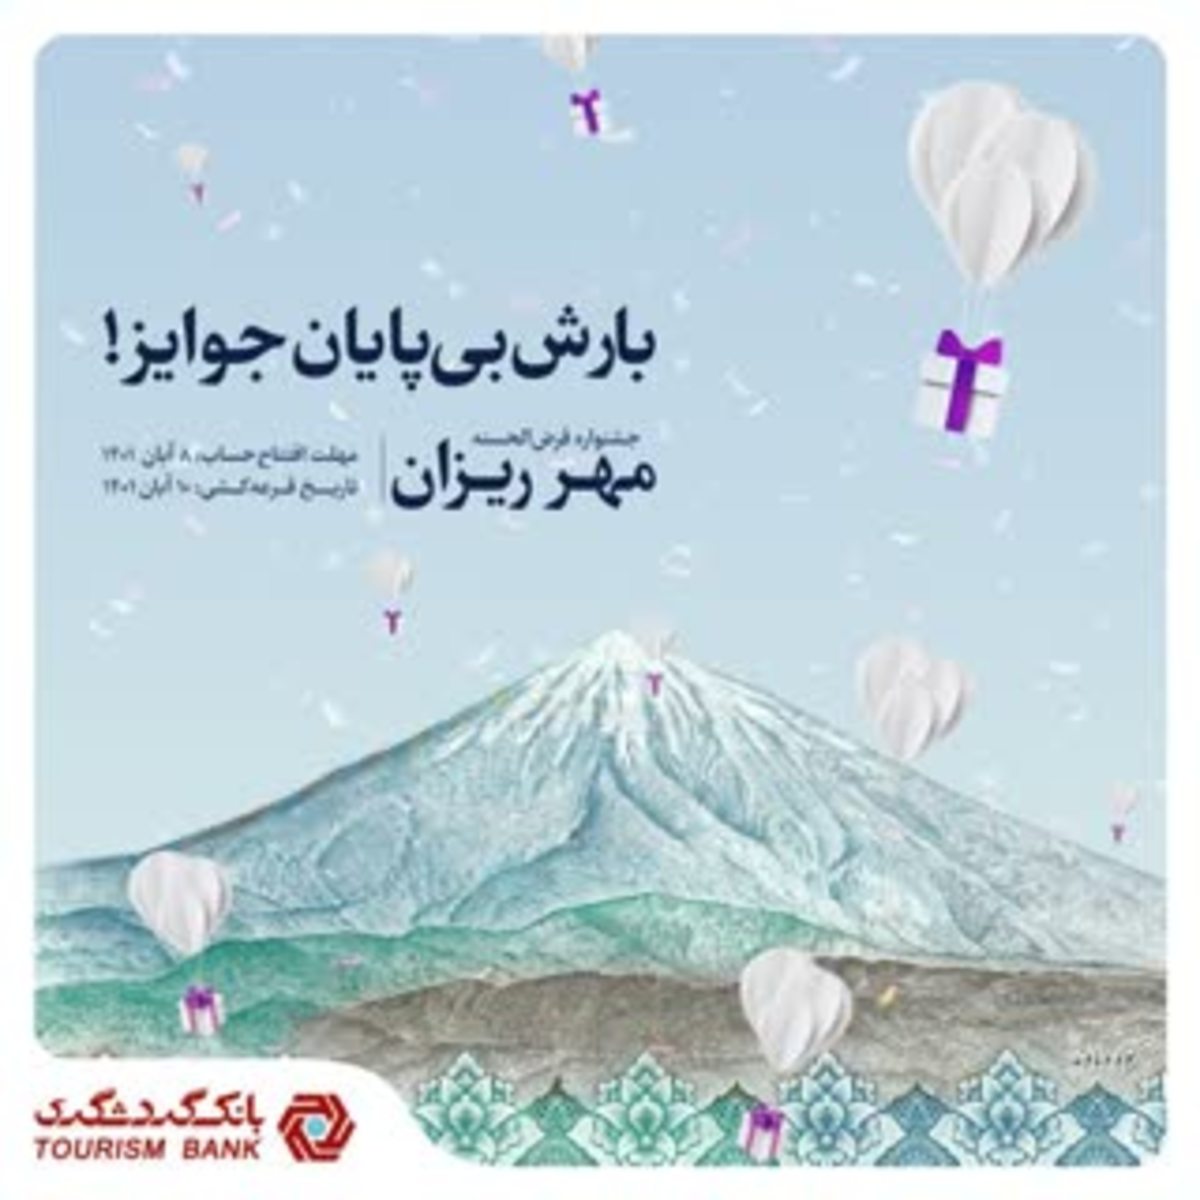 جشنواره قرعه‌کشی حساب‌های قرض‌الحسنه بانک گردشگری با عنوان ” مهرریزان” روز سه شنبه ۱۰ آبان ماه ۱۴۰۱ برگزار می‌شود.